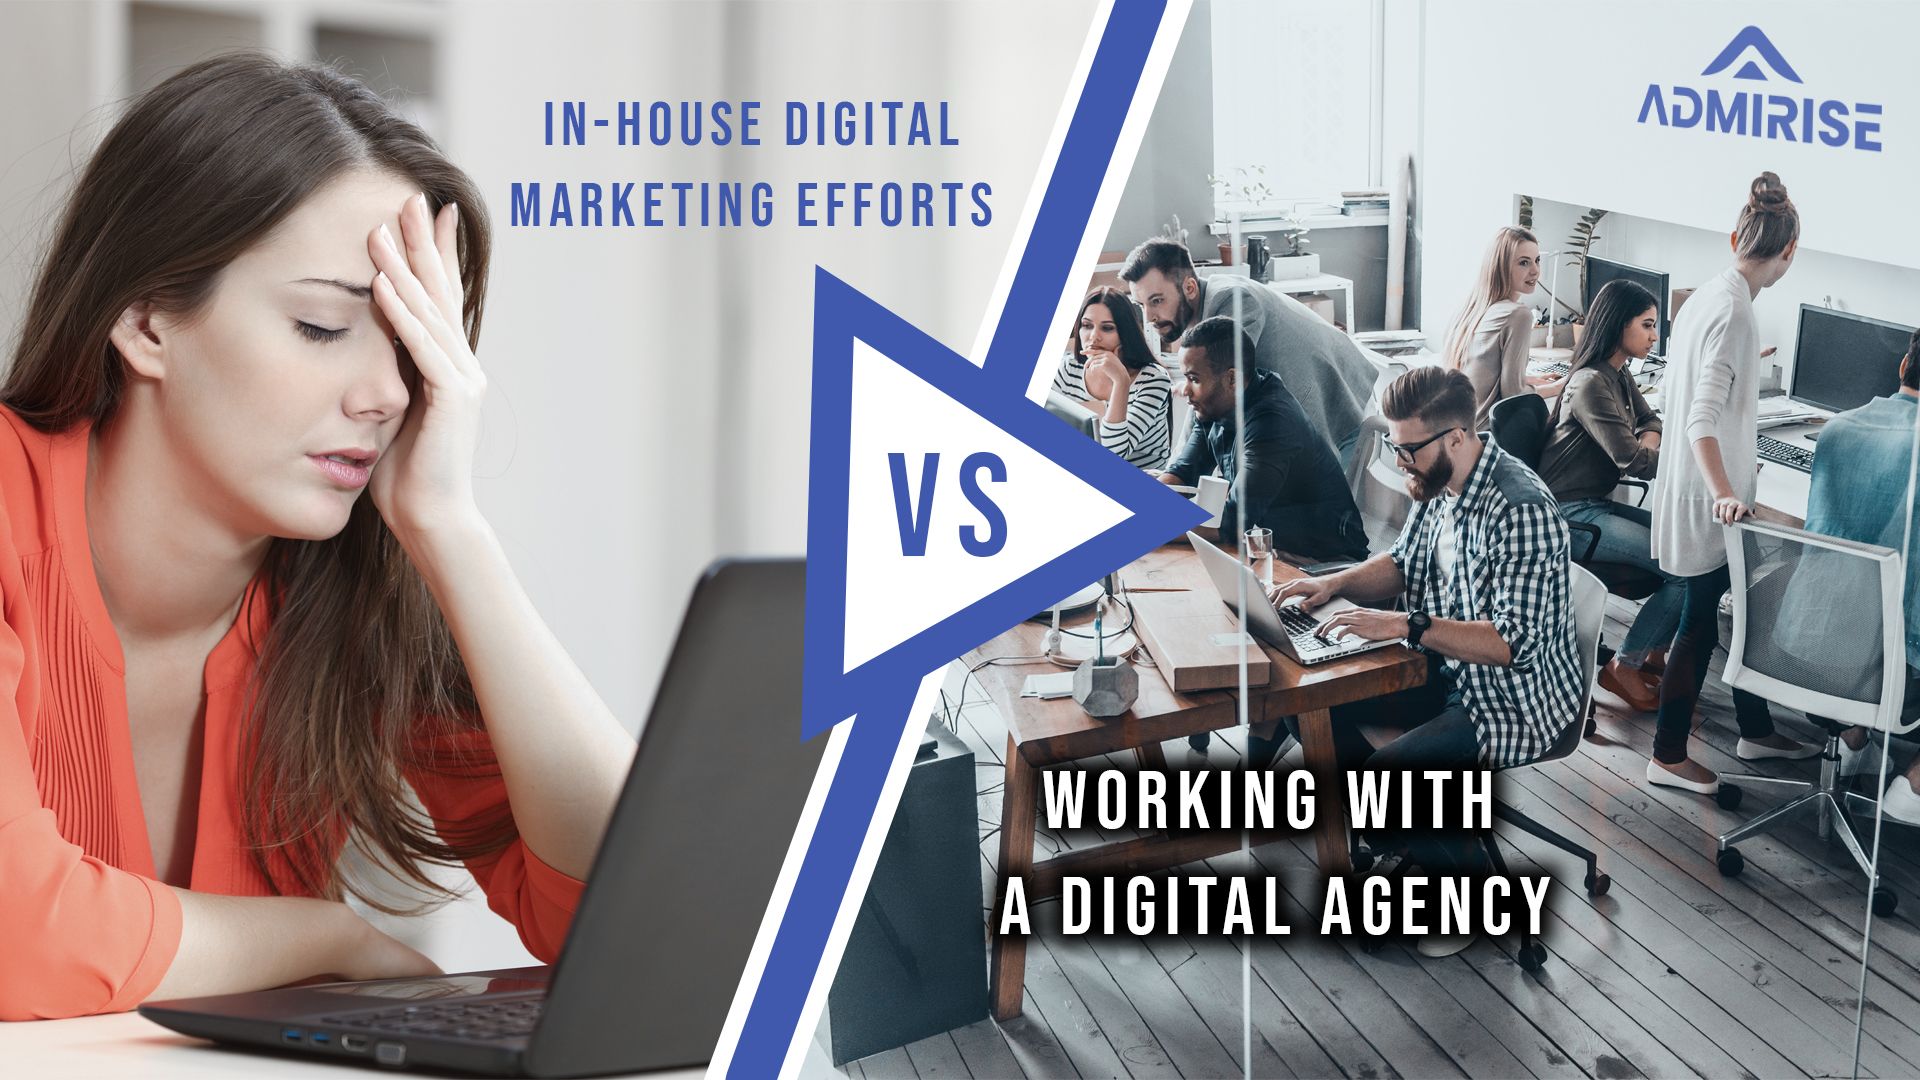 Interne Digitale Marketingbemühungen vs. Zusammenarbeit mit einer Digitalen Agentur